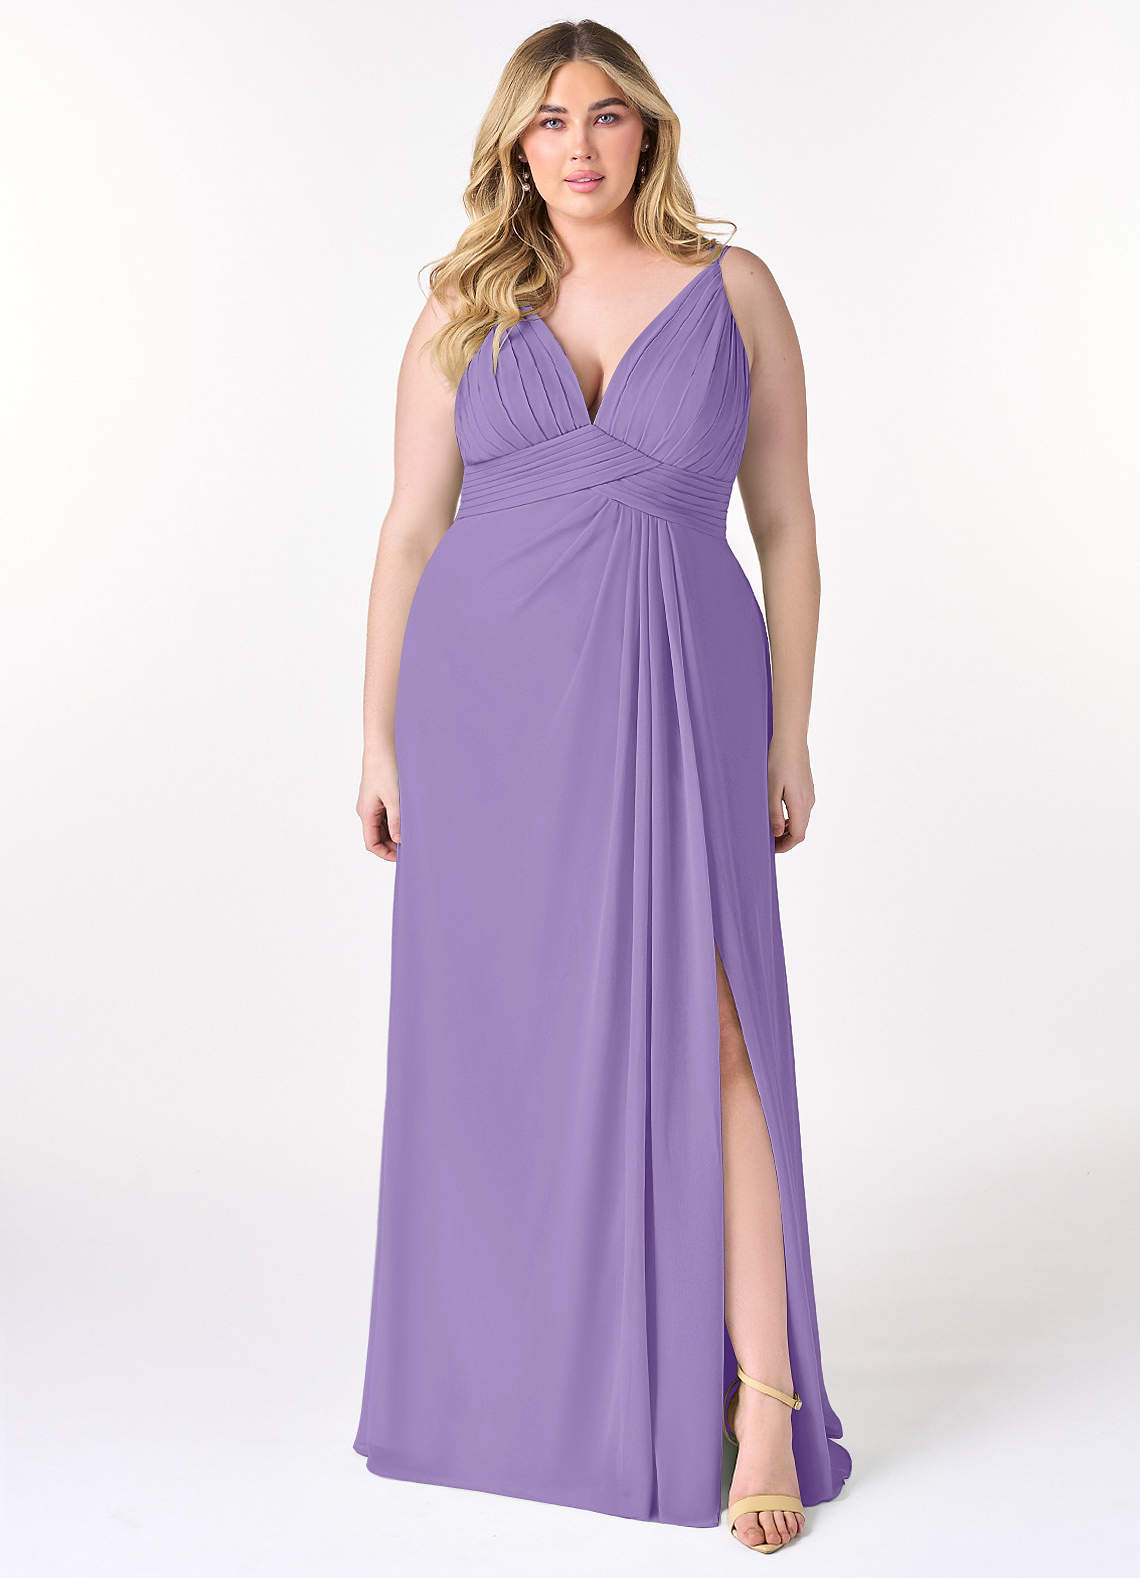 Azazie Maren Allure Bridesmaid Dresses A-Line V-Neck Lace Chiffon Floor-Length Dress image1